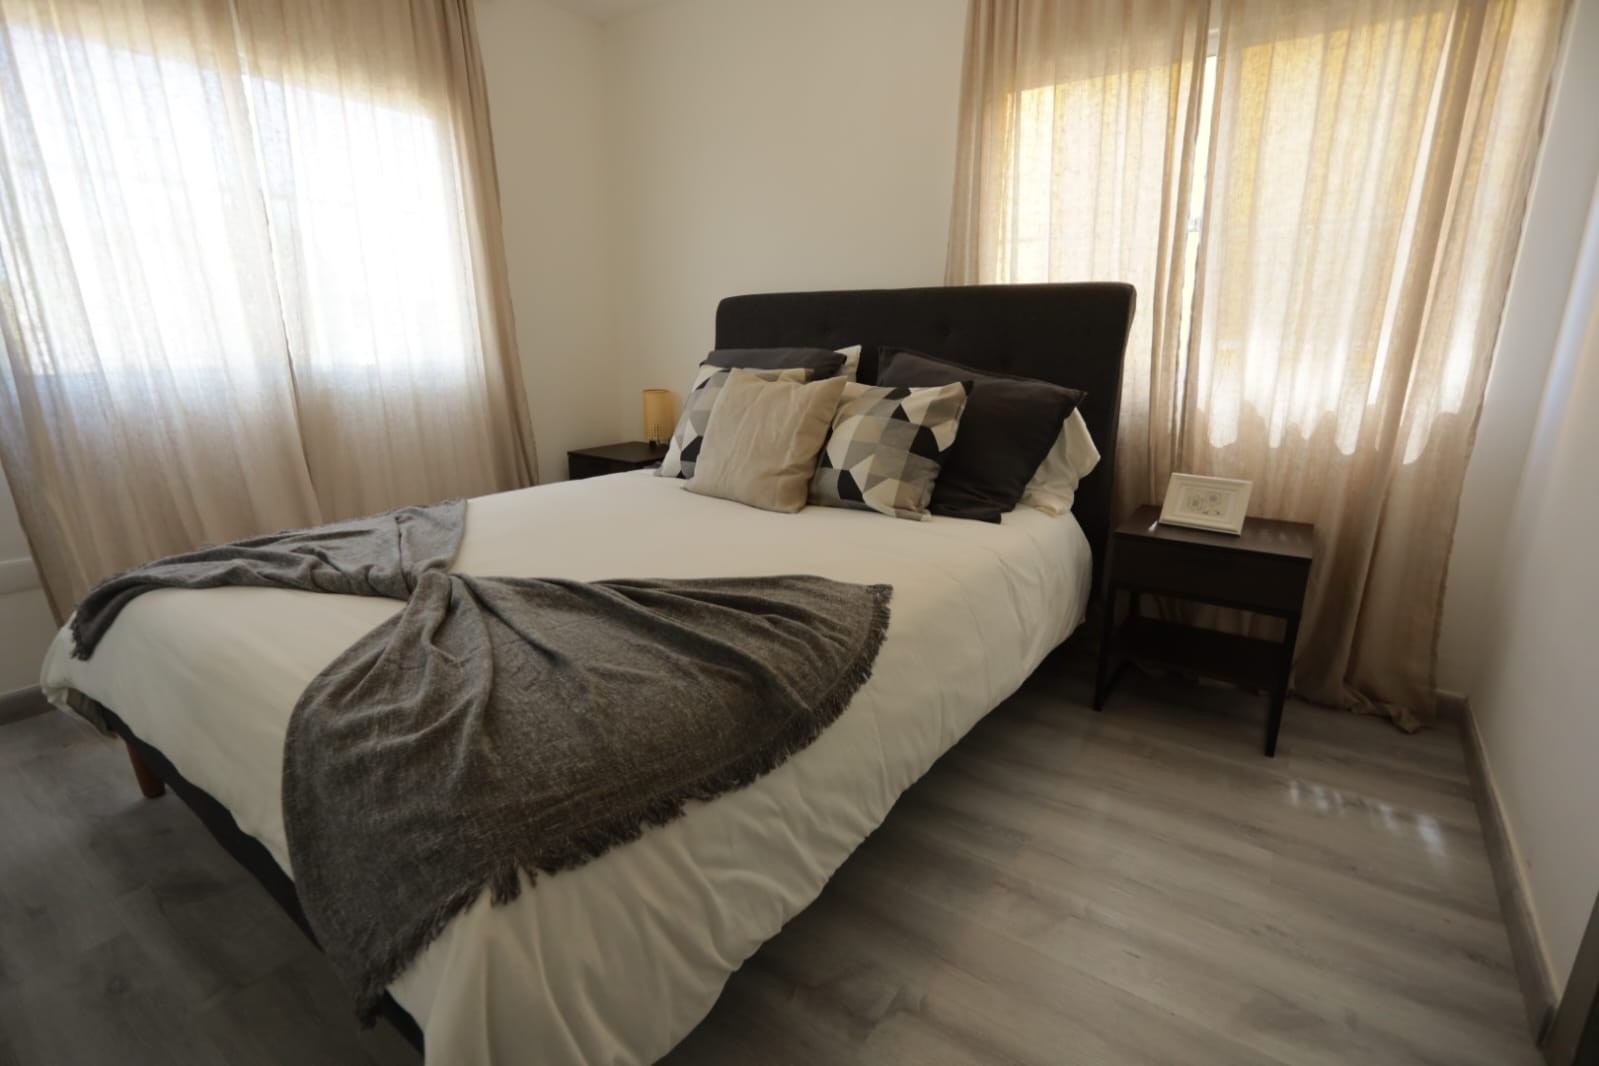 apartamentos - Se vende proyecto residencial en Santo Domingo Norte

US$75,000 4